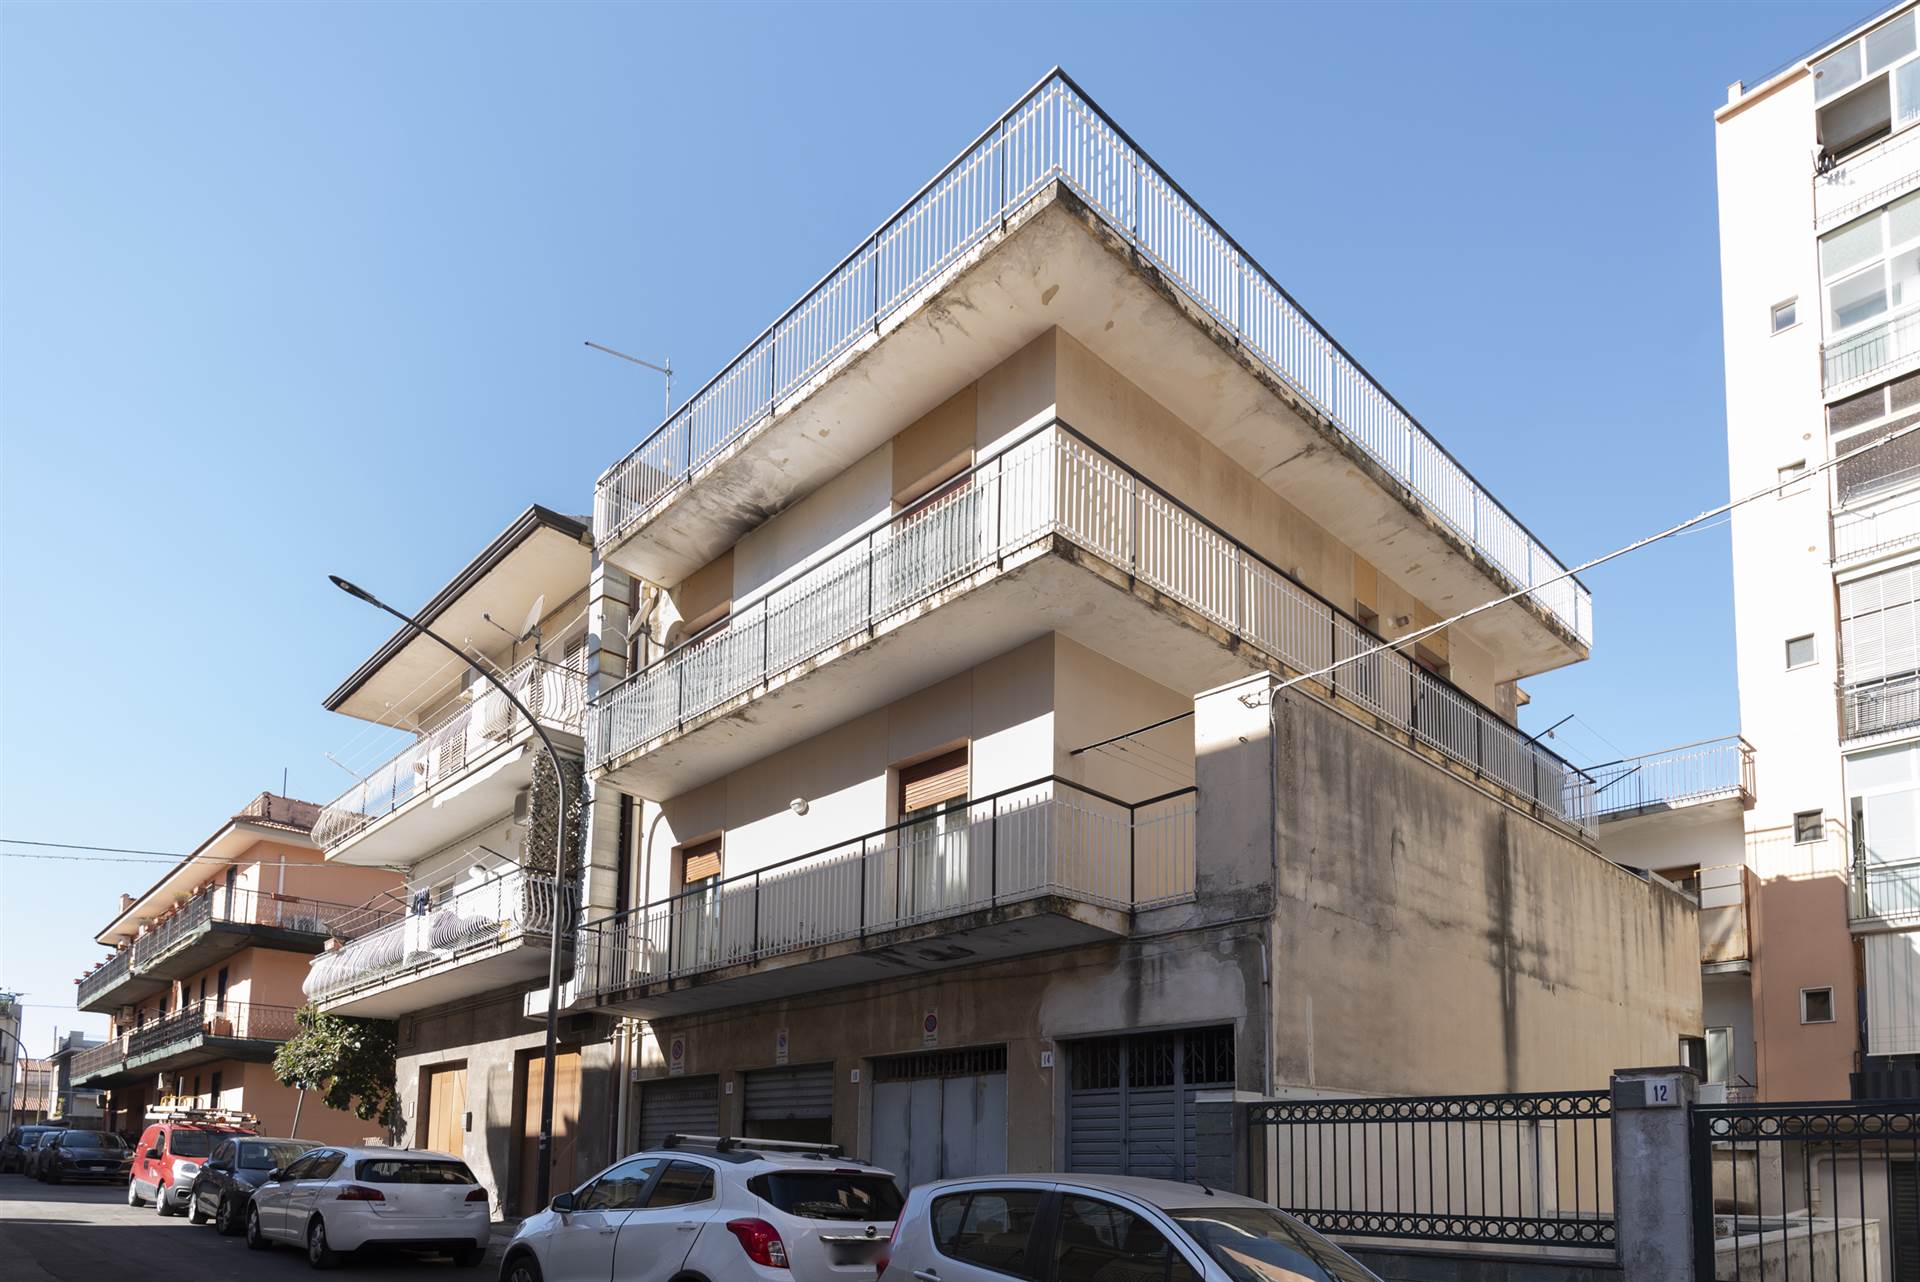 Rif. RA63 - Via Calì, Valverde Siete alla ricerca di un appartamento in vendita nel tranquillo contesto cittadino di Valverde? Abbiamo la soluzione 